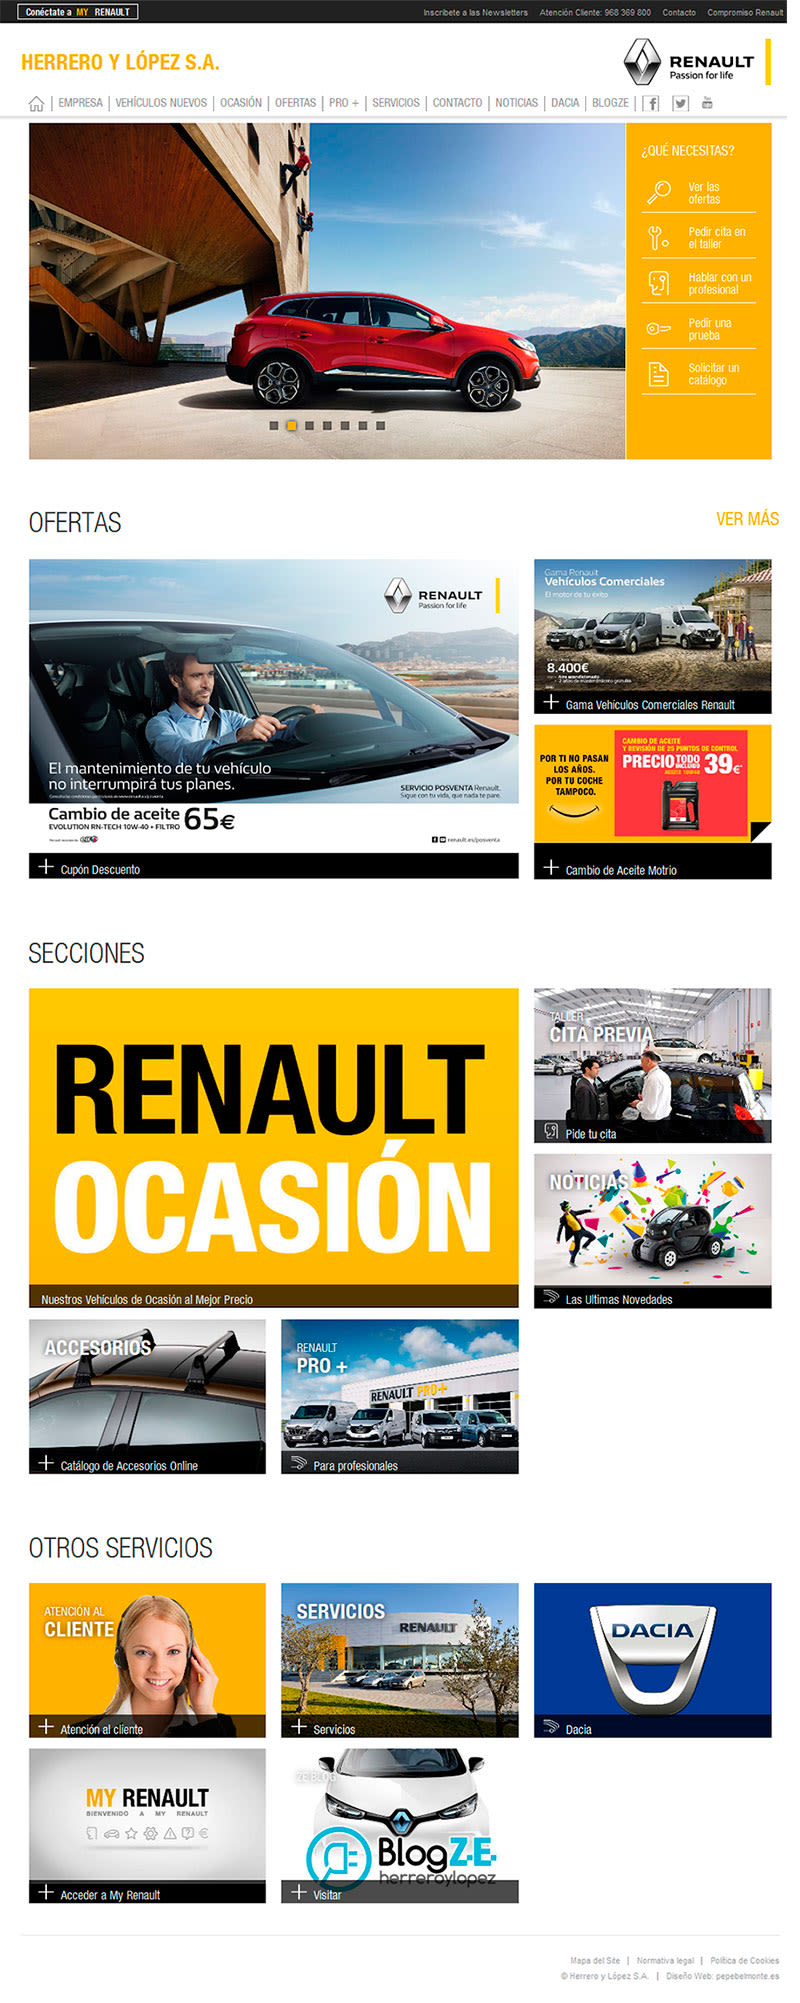 Actualización Web Herrero y López S.A. - Renault Murcia 0